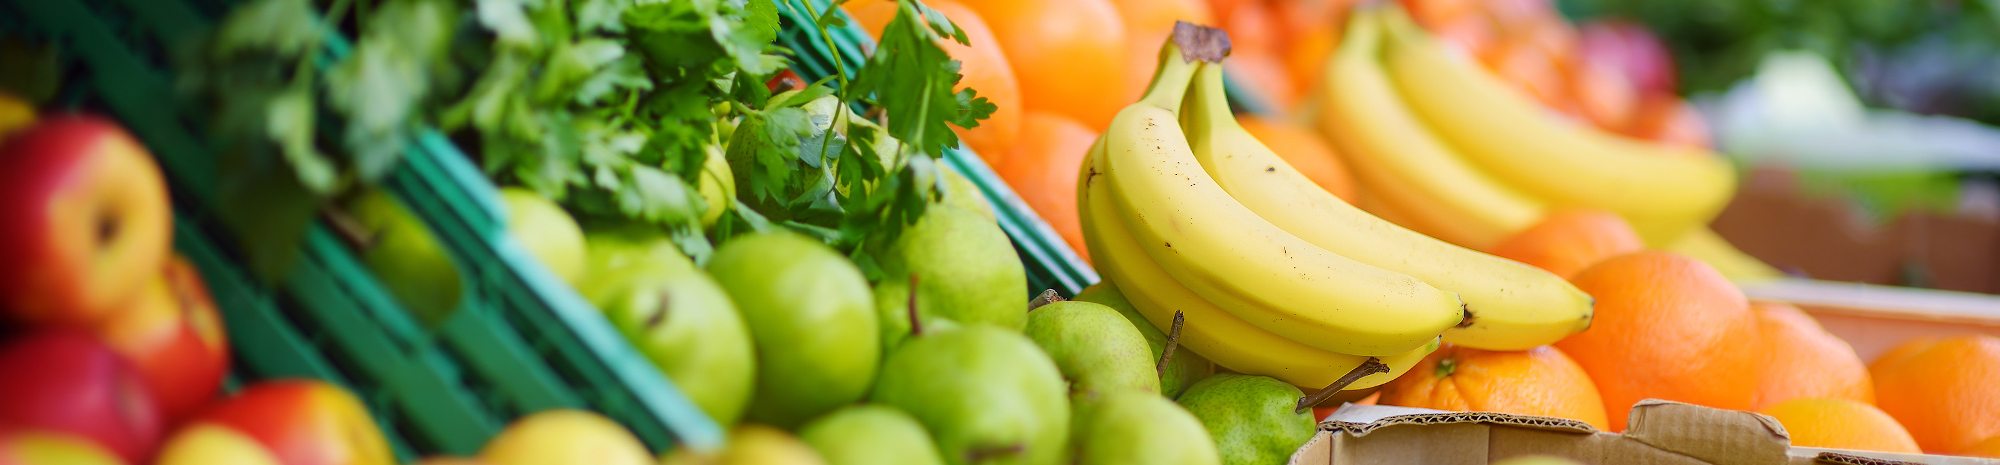 Obst und Gemüse einer Marktauslage